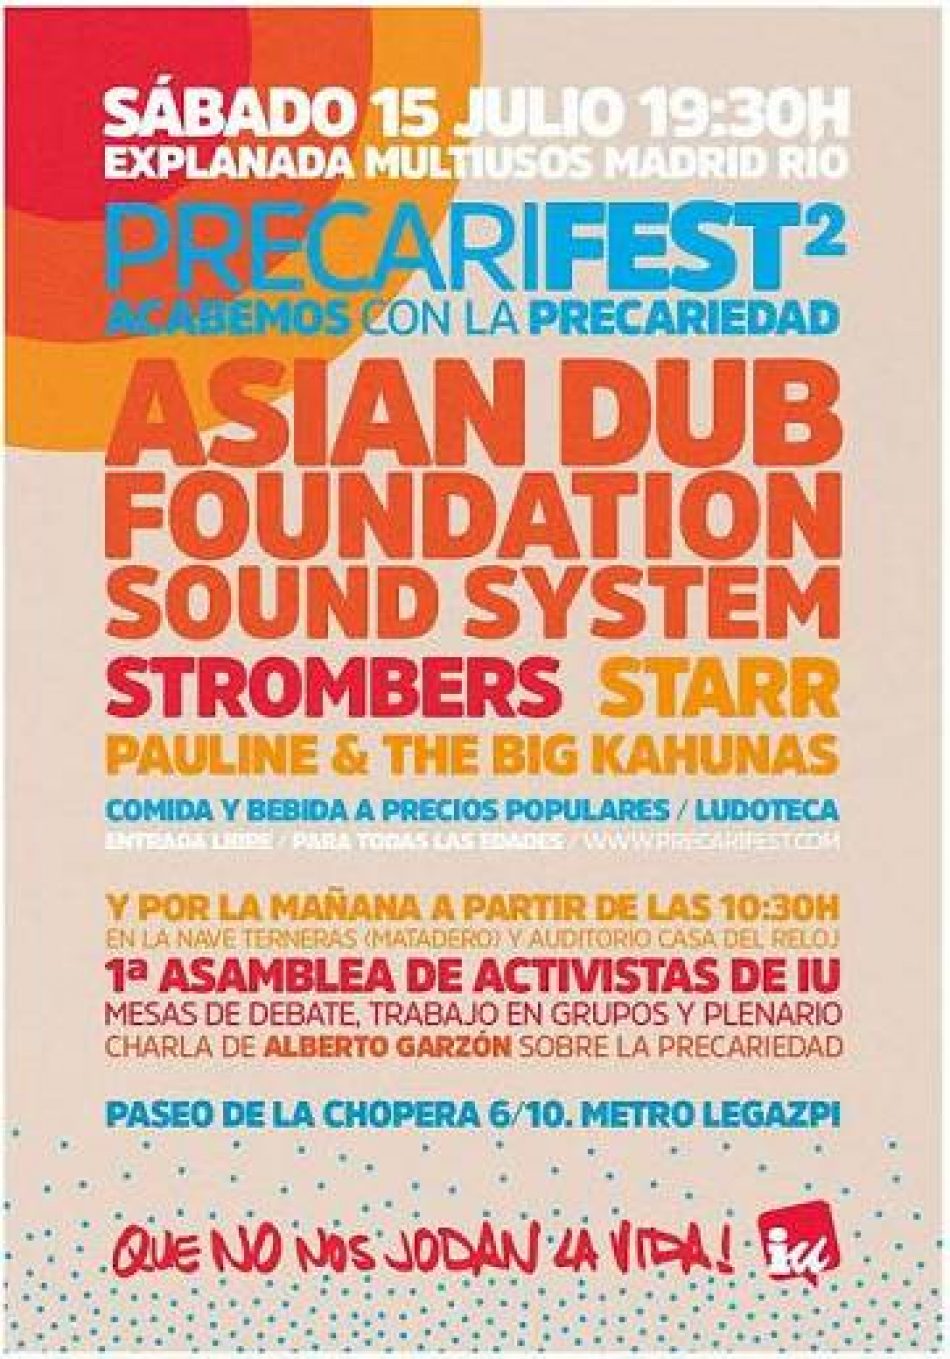 La 2ª edición del Precarifest de IU sube al escenario el sábado 15 a Asian Dub Foundation Sound System, Strombers, Starr y Pauline & The Big Kahunas